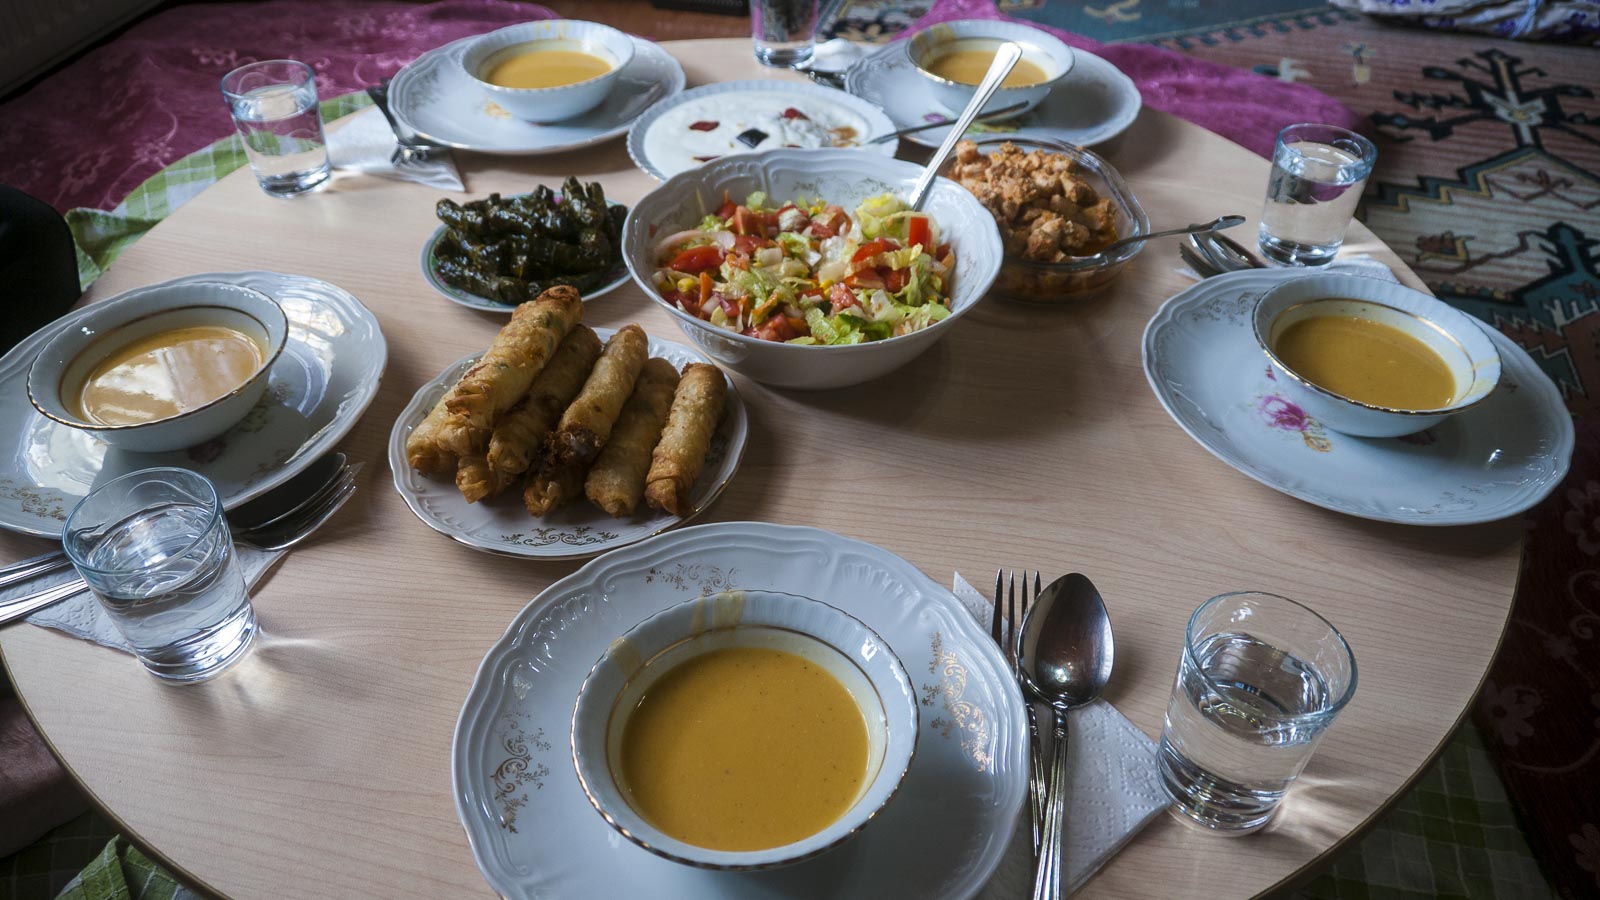 Briwat Rolls food in morocco